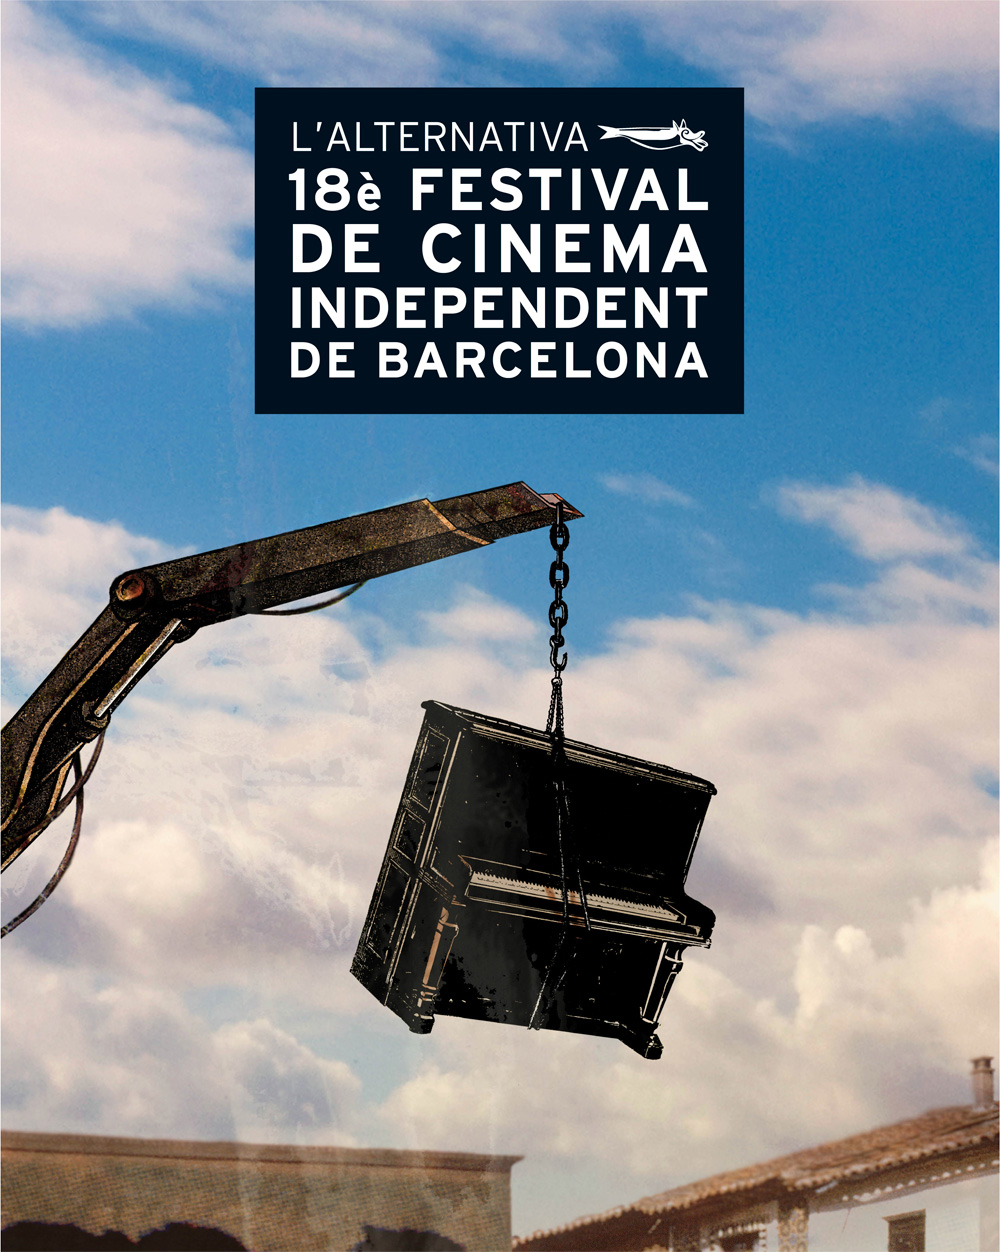 18a edició de l’Alternativa, el Festival de Cinema Independent de Barcelona